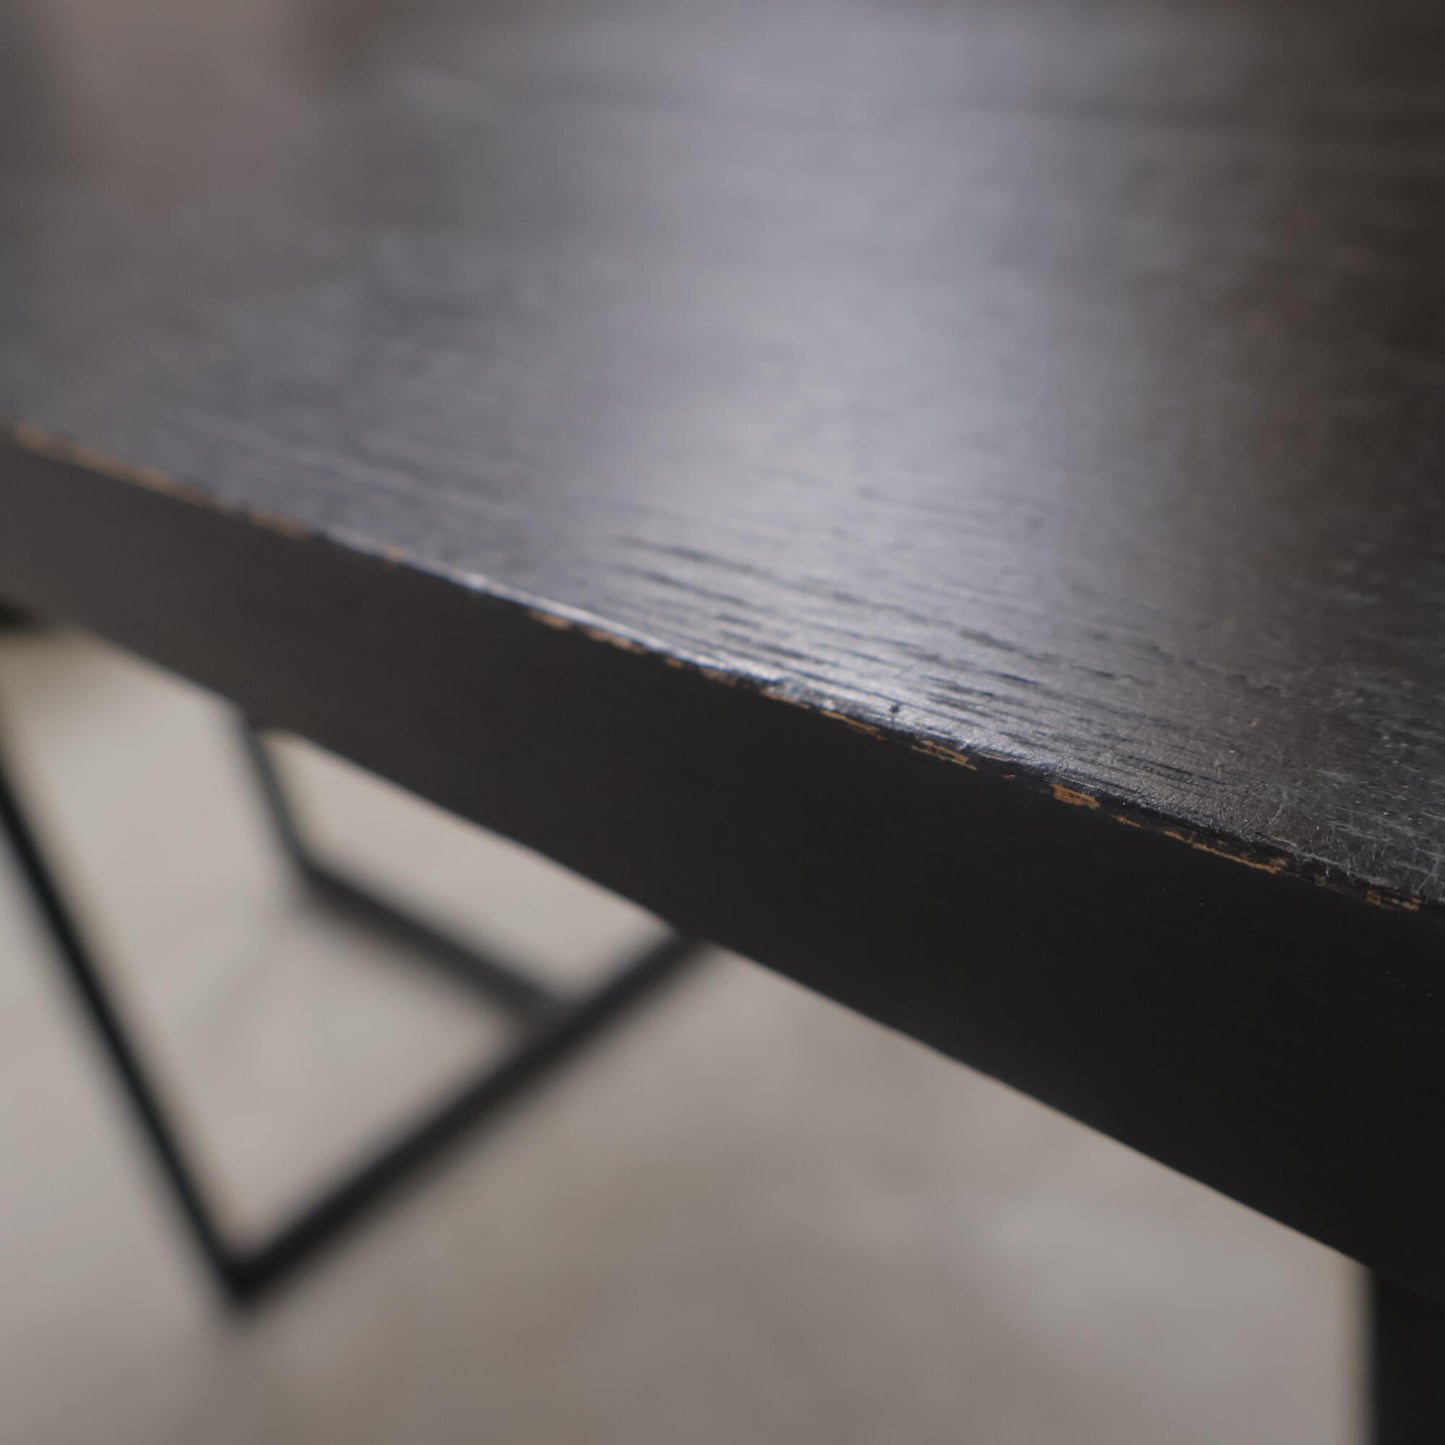 Nyrenset | Ygg & Lyng spisebord i sort